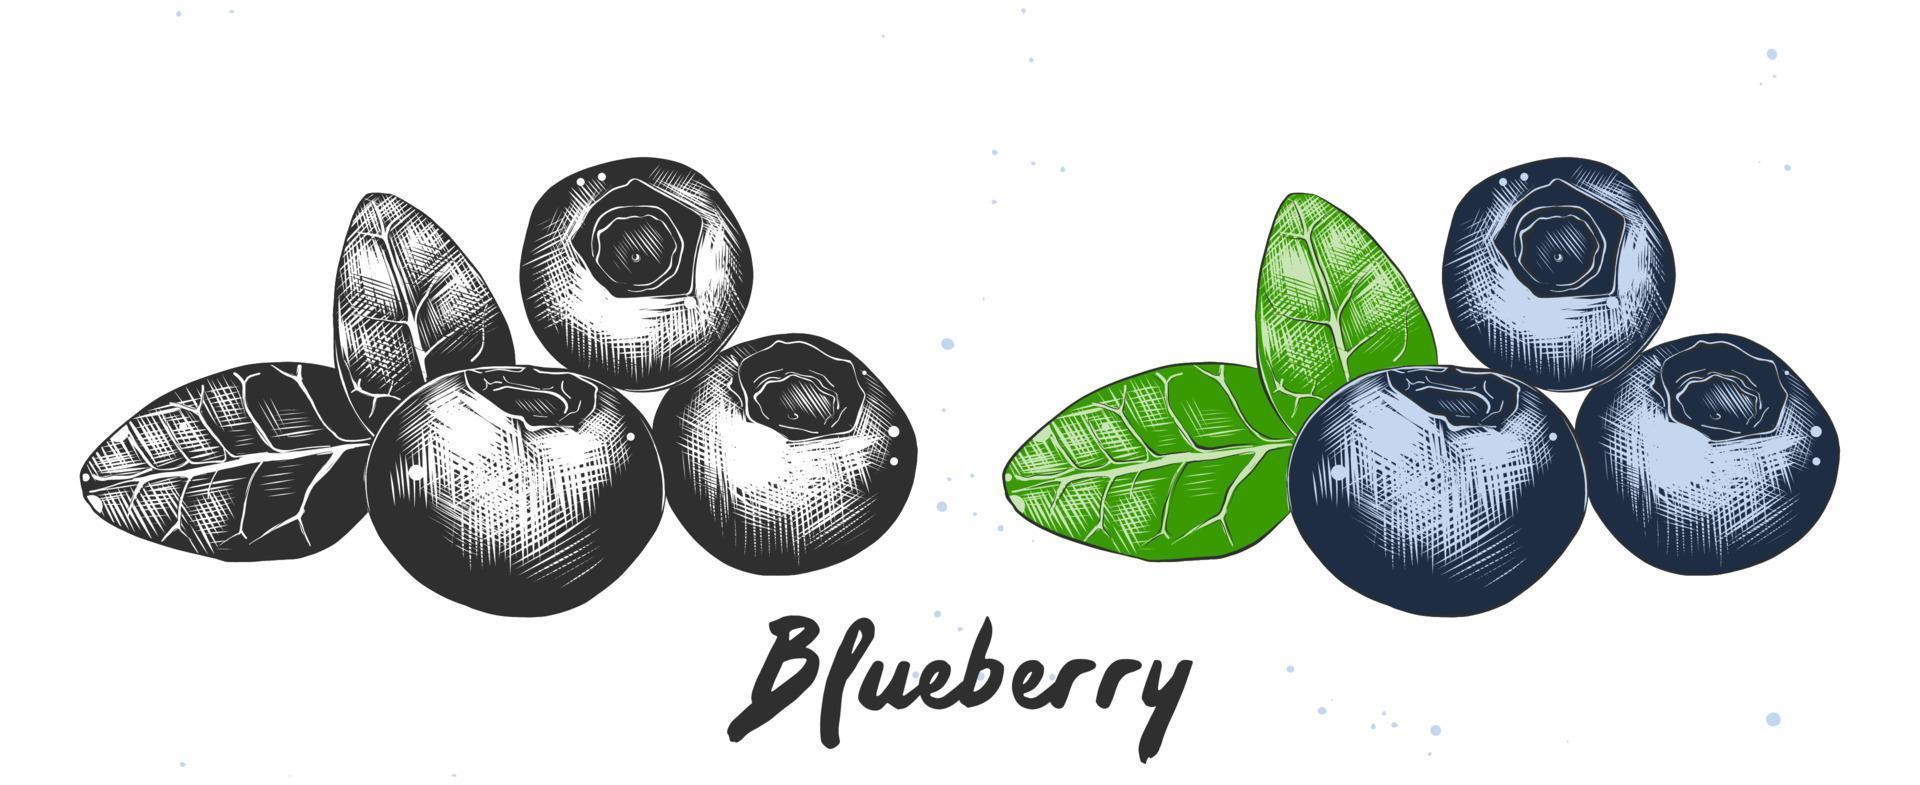 vektor graverat stil illustration för affischer, dekoration, förpackning och logotyp. hand dragen skiss av blåbär i svartvit och färgrik. detaljerad etsning mat teckning.